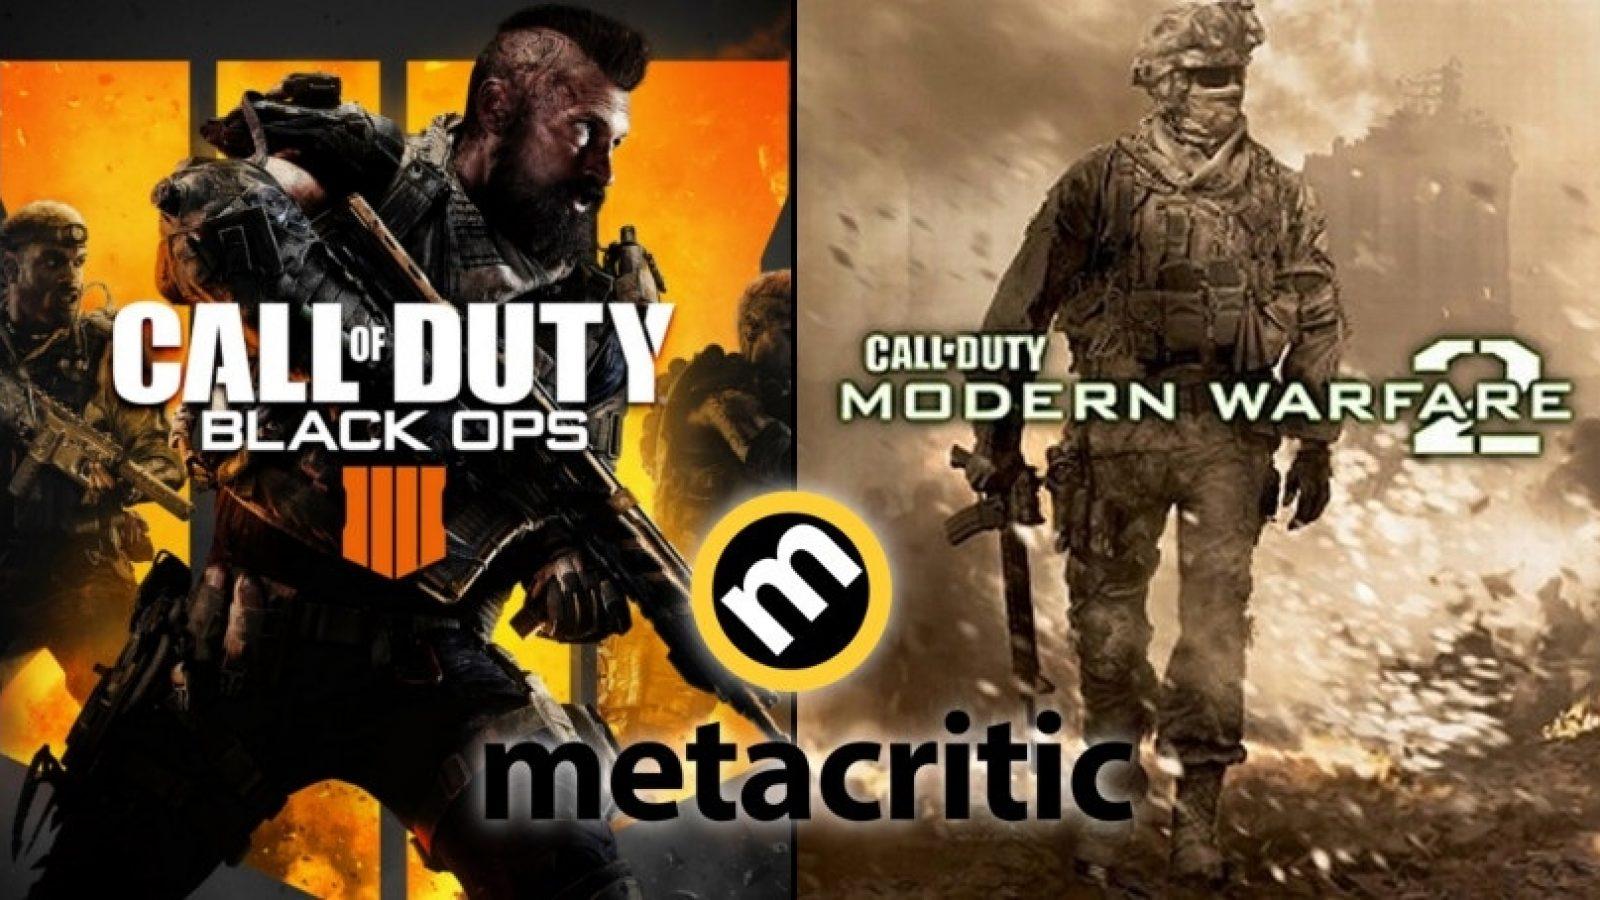 Metacritic - Call of Duty: Modern Warfare II (Metascore